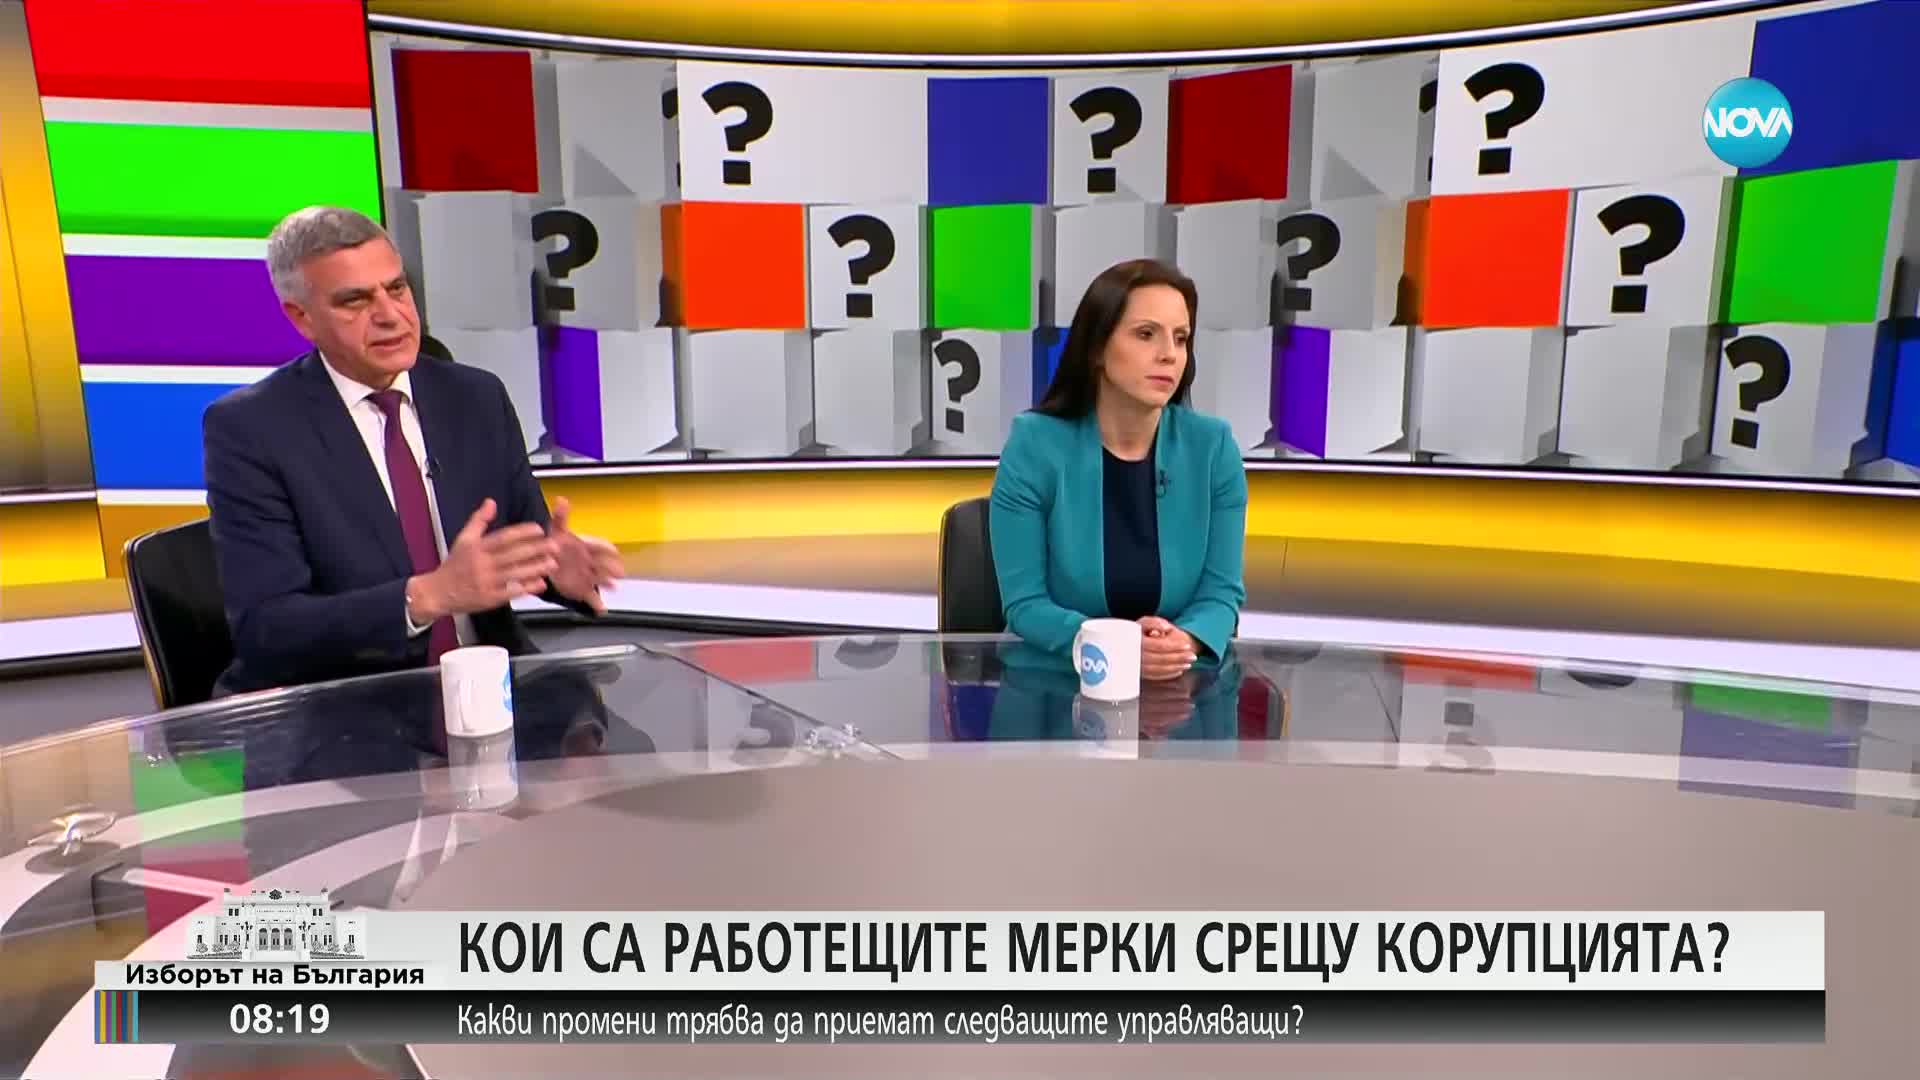 Янев: „Български възход” ще застане на тази страна, която предложи коалиционно споразумение